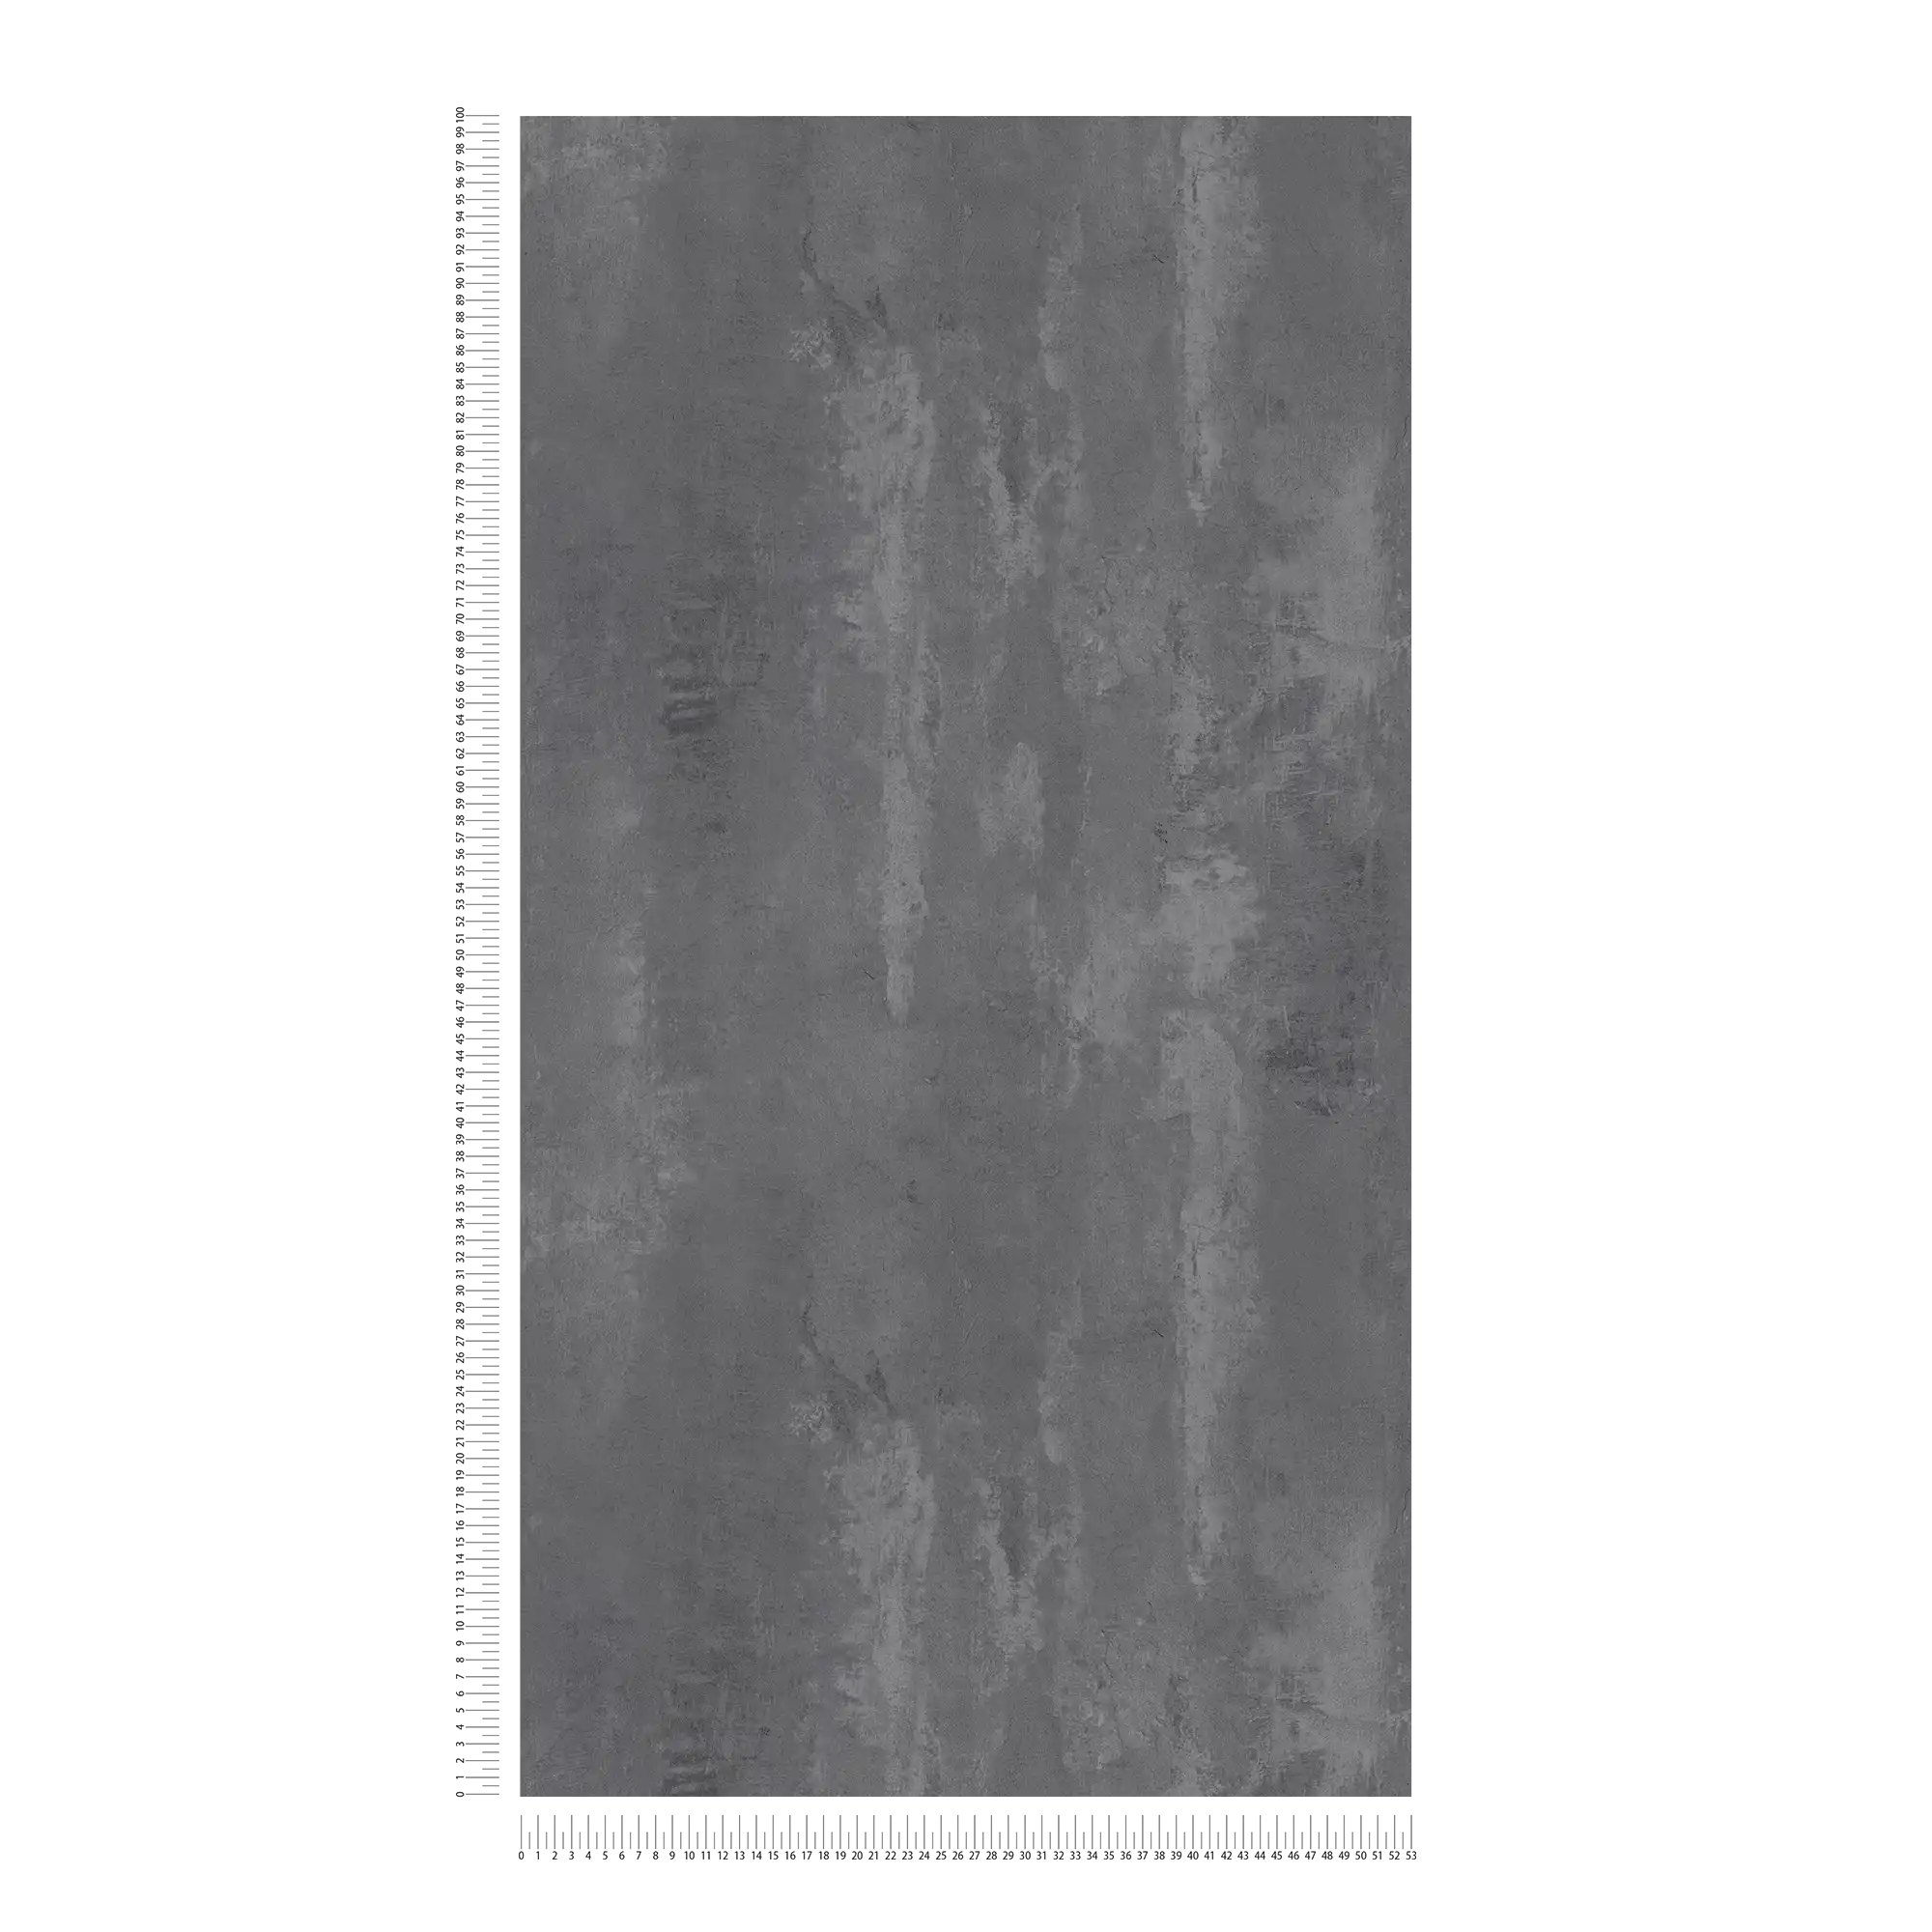             Dunkle Betontapete rustikales Muster & Industrial Style – Grau
        